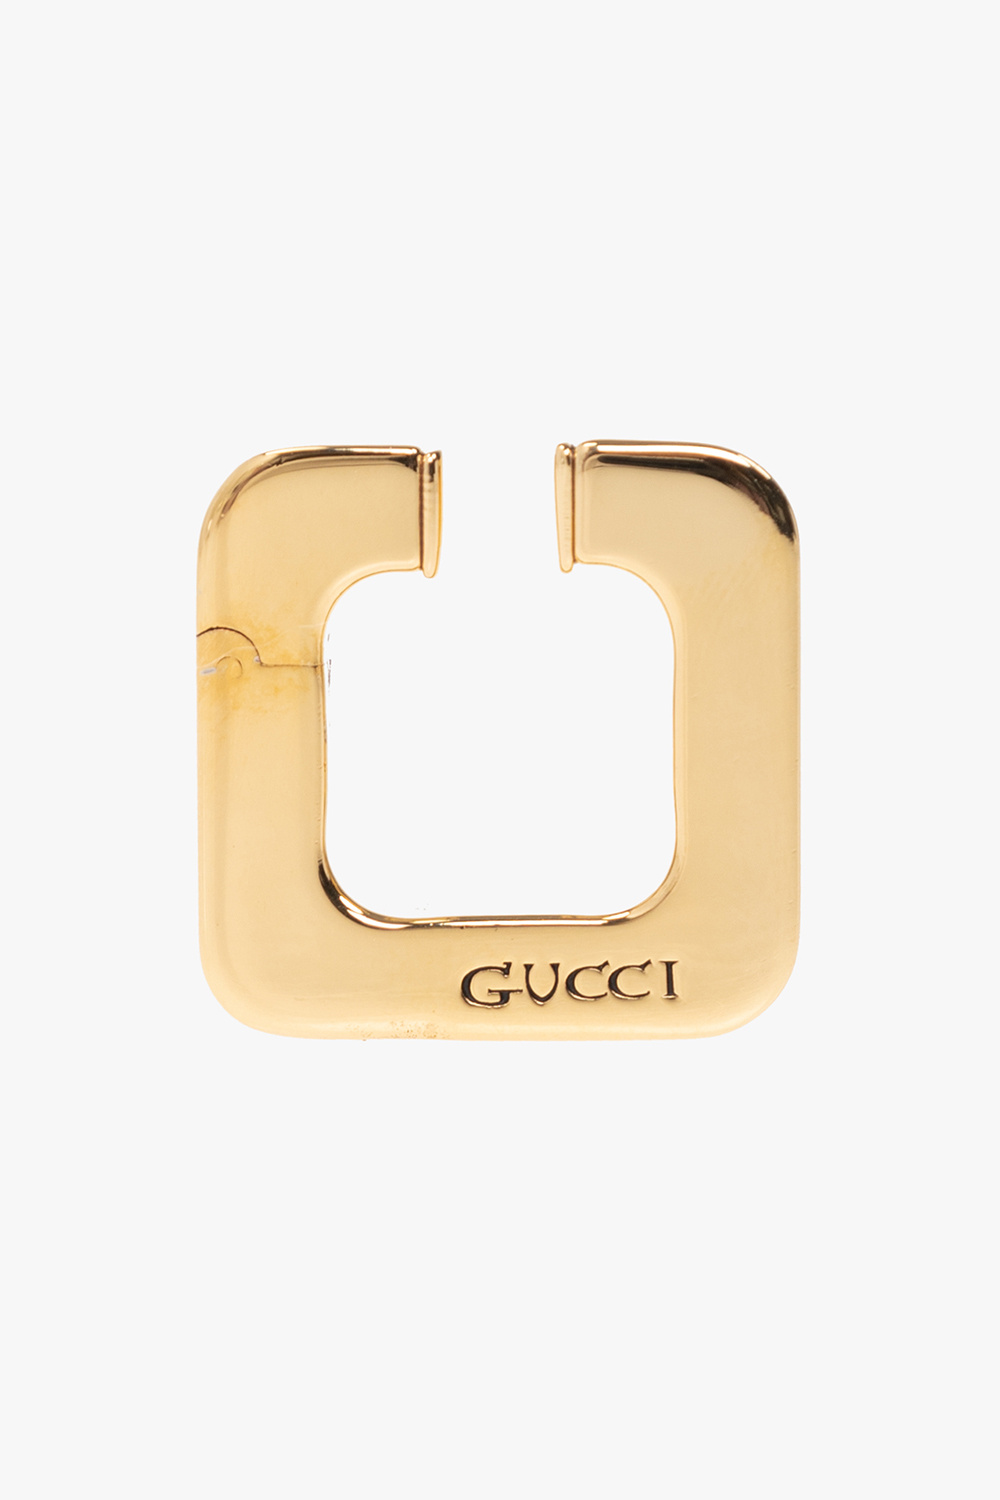 Gucci gucci north face pop ups american dream store